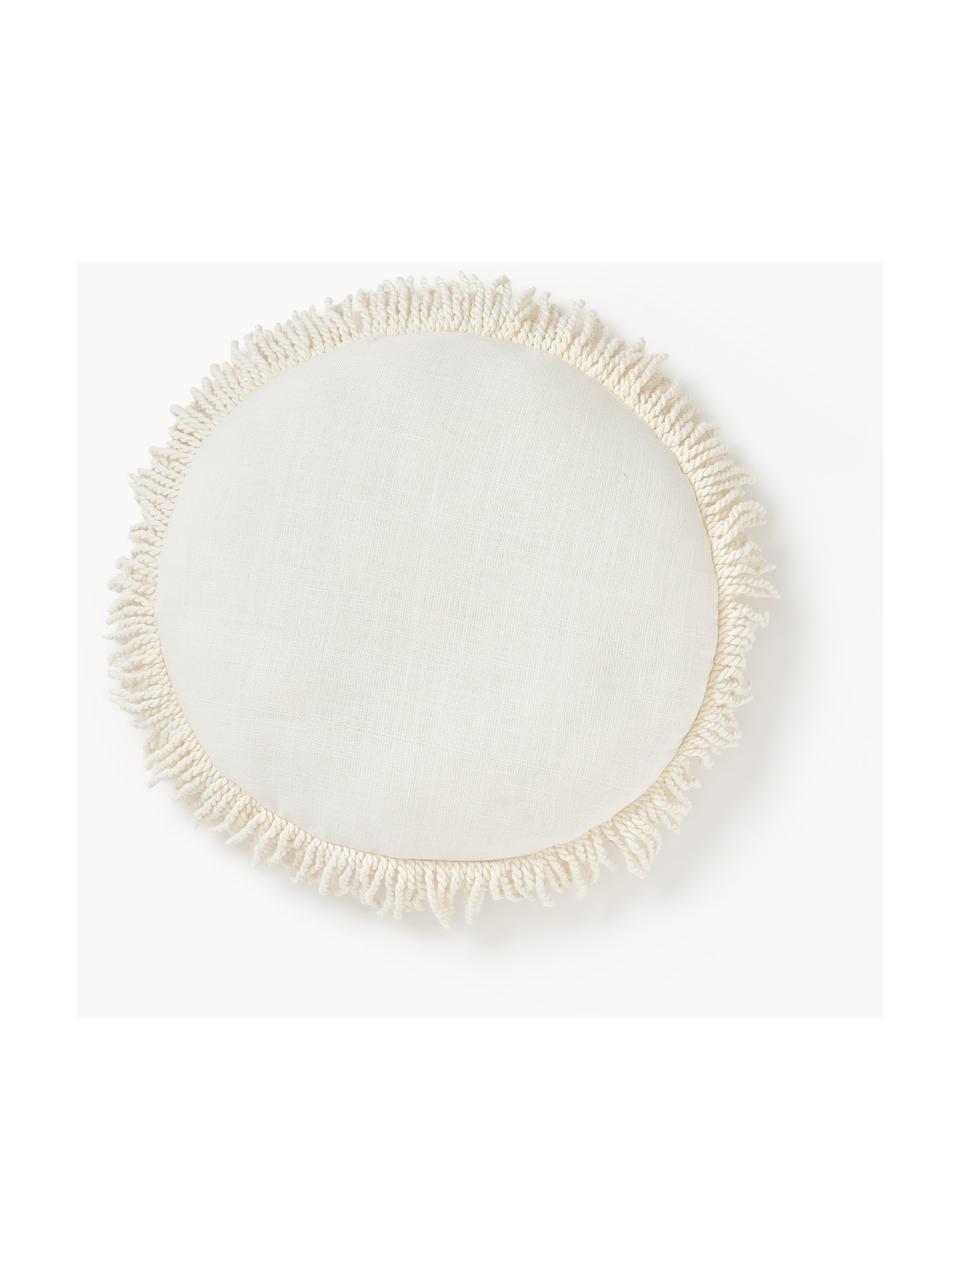 Cuscino rotondo con frange Nedda, Rivestimento: 100% cotone, Beige chiaro, Ø 35 cm